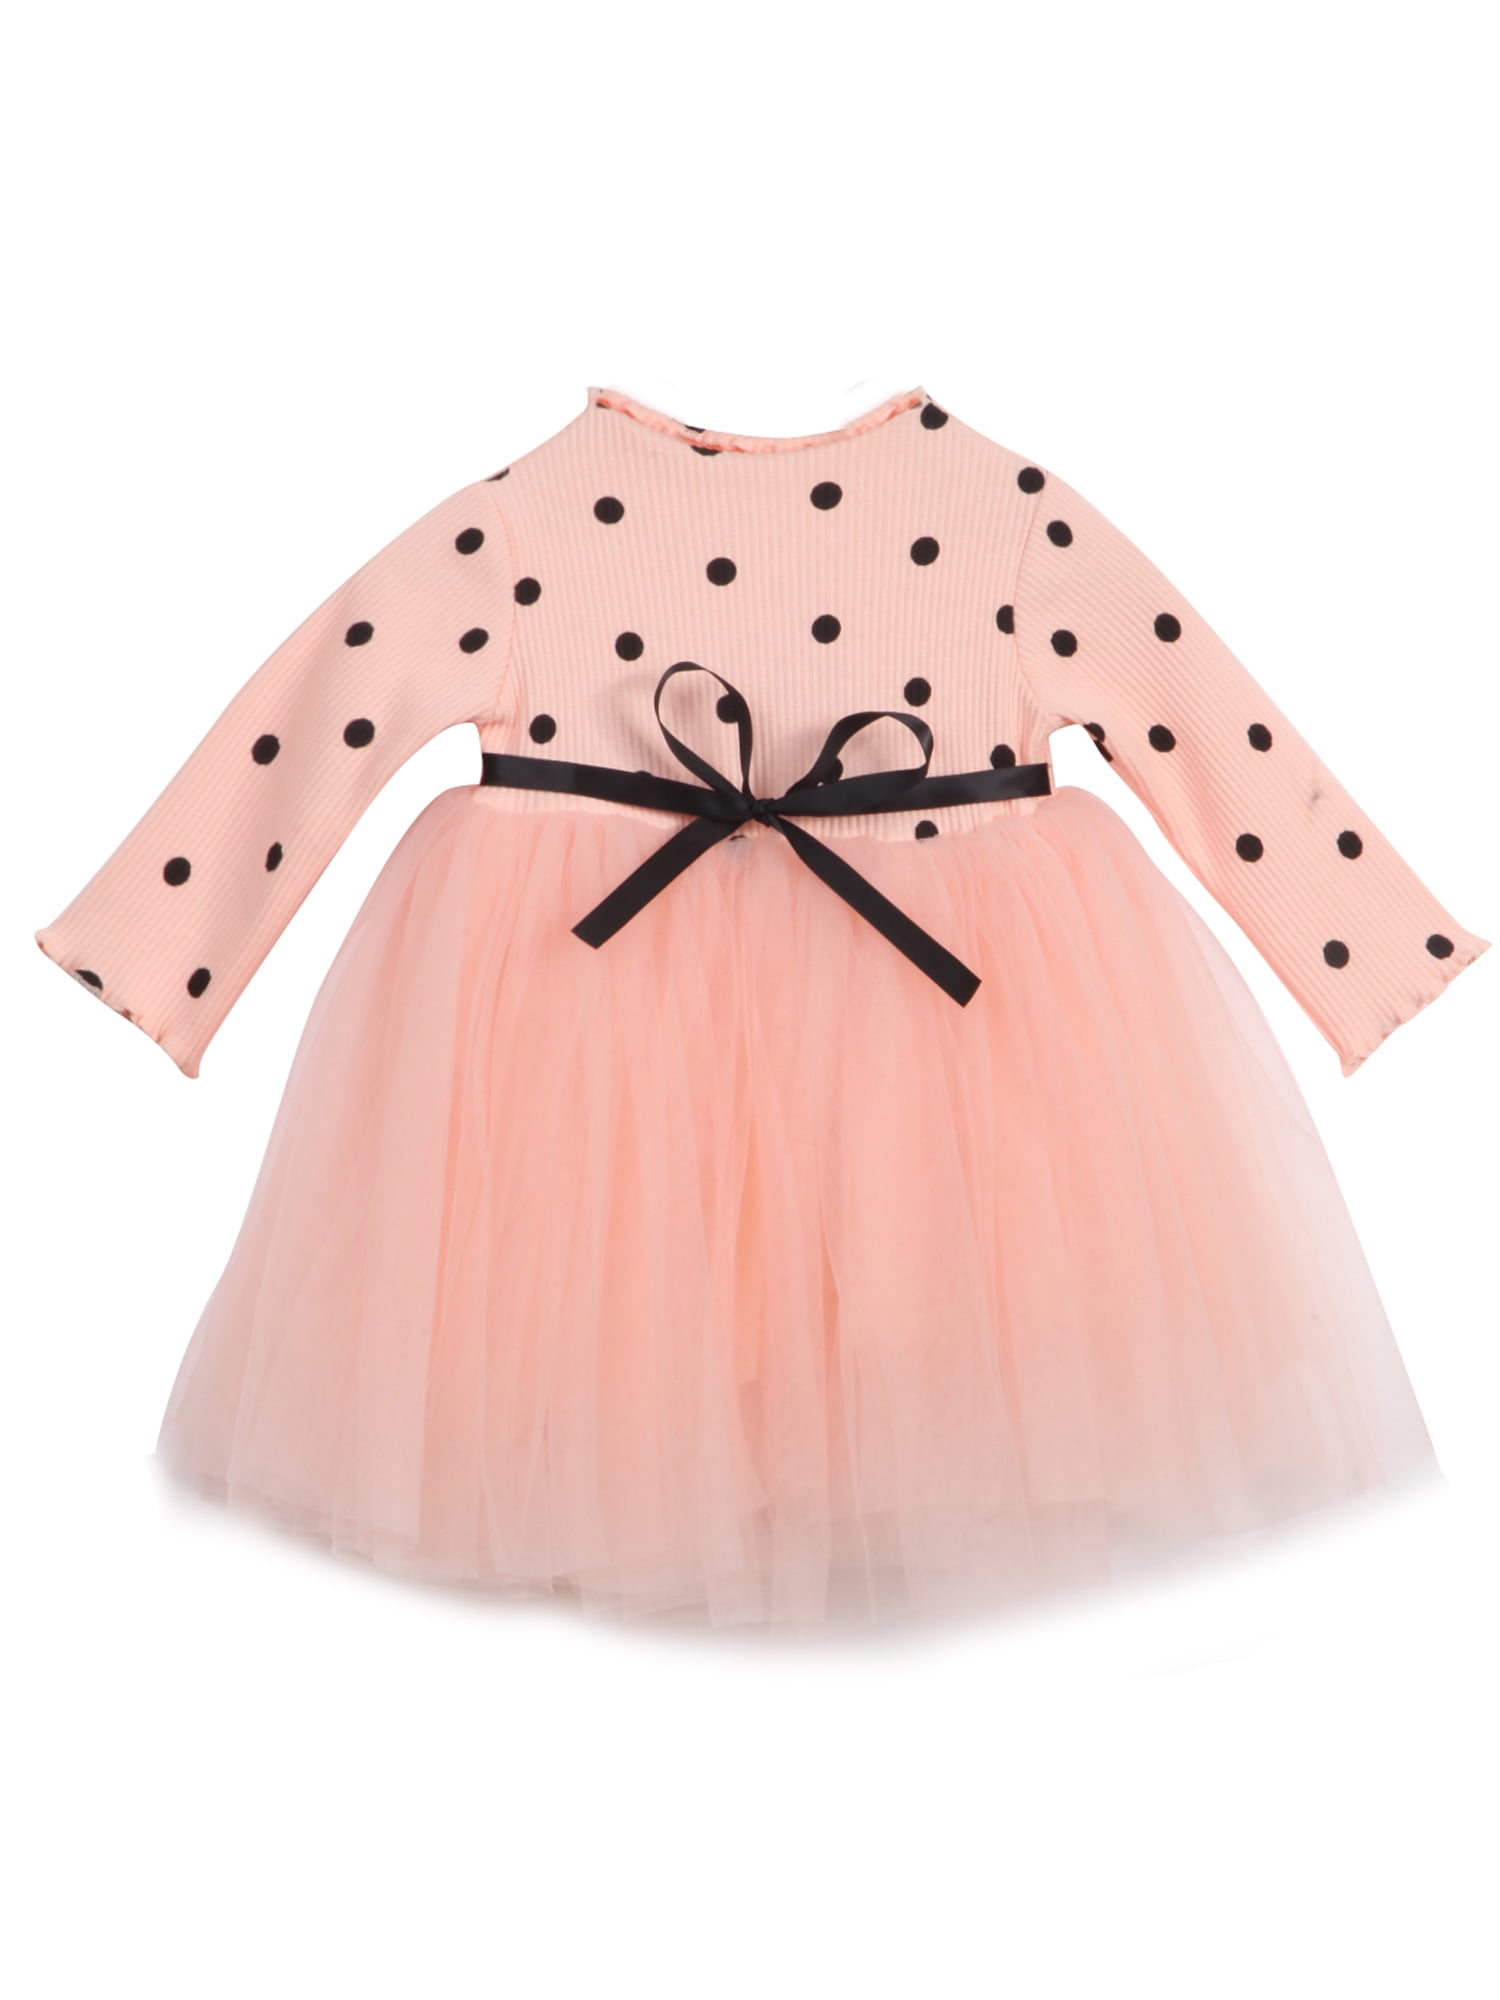 BTGIXSF Baby Girls Tutu Dress Toddler Long Sleeve/Sleeveless Dresses Infant Tulle Sundress